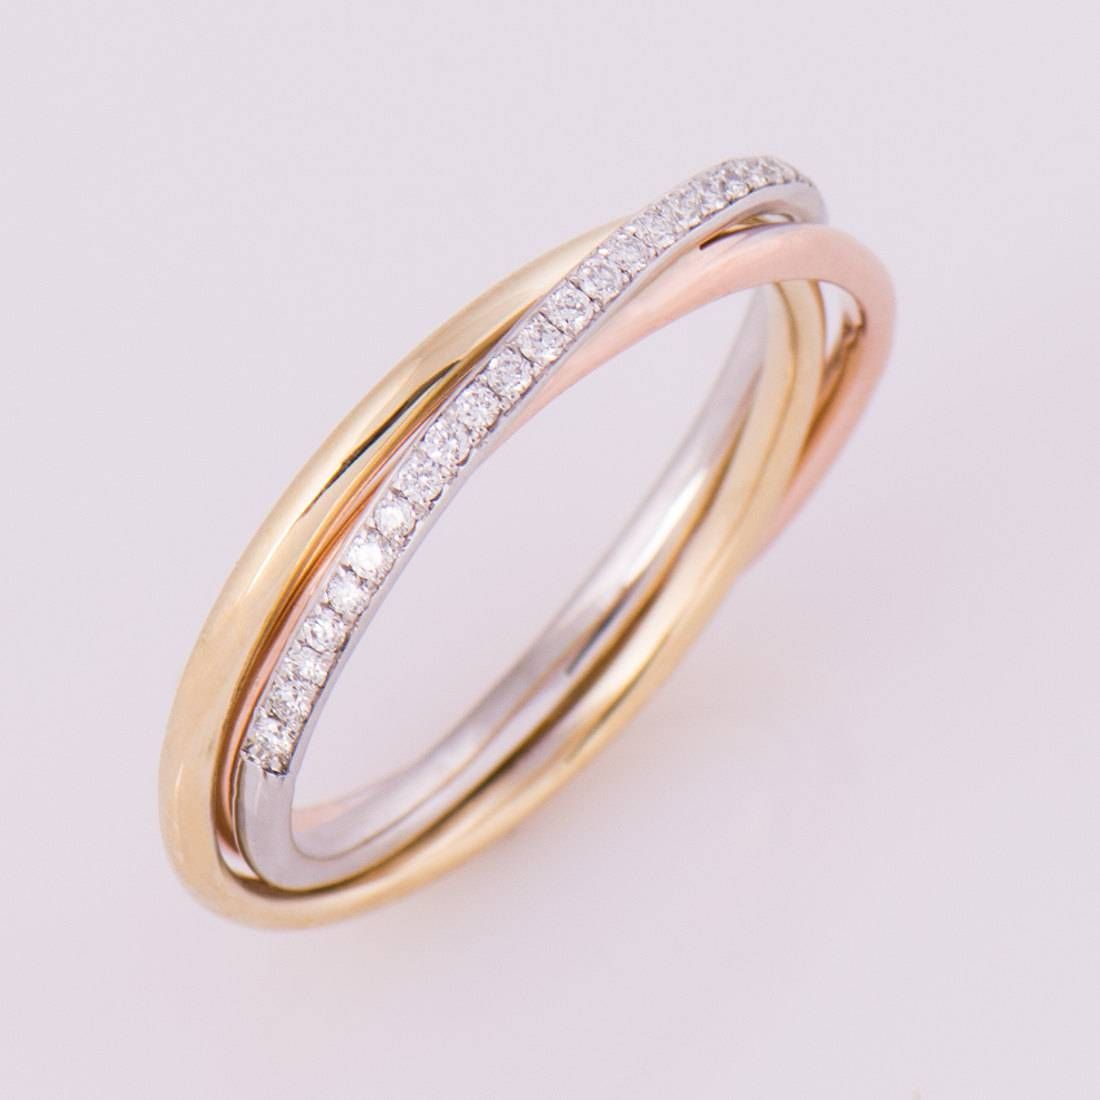 Trinity Diamond Rings | Wedding, Promise, Diamond, Engagement Inside Trinity Diamond Engagement Rings (View 14 of 15)